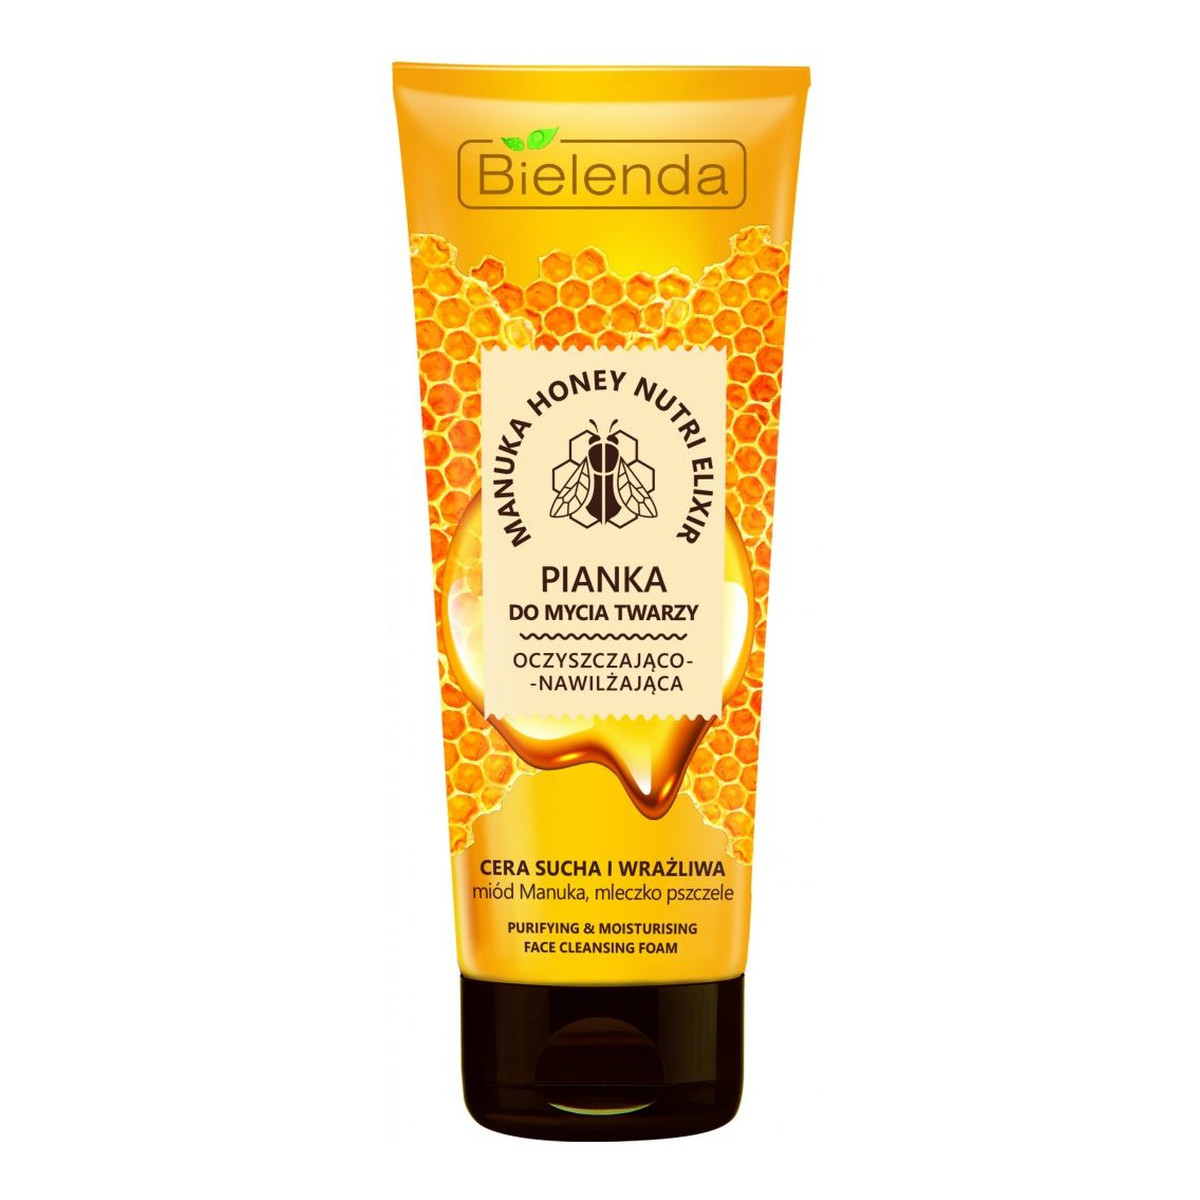 Bielenda Manuka Honey Nutri Elixir Pianka do mycia twarzy oczyszczająco-nawilżająca 150g